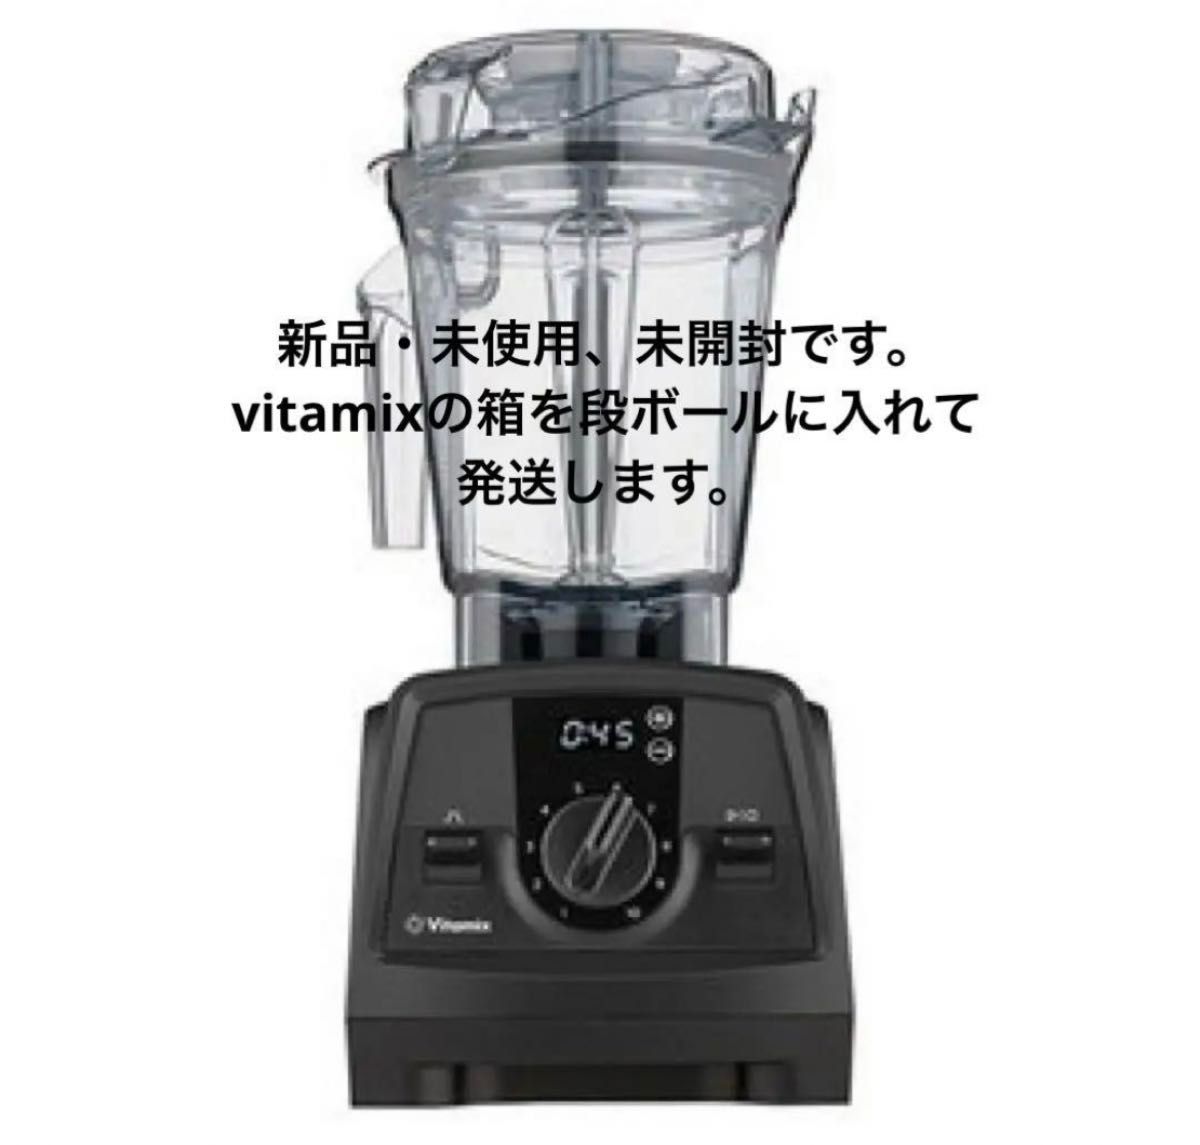 【新品・未使用】vitamix v1200i ブラック